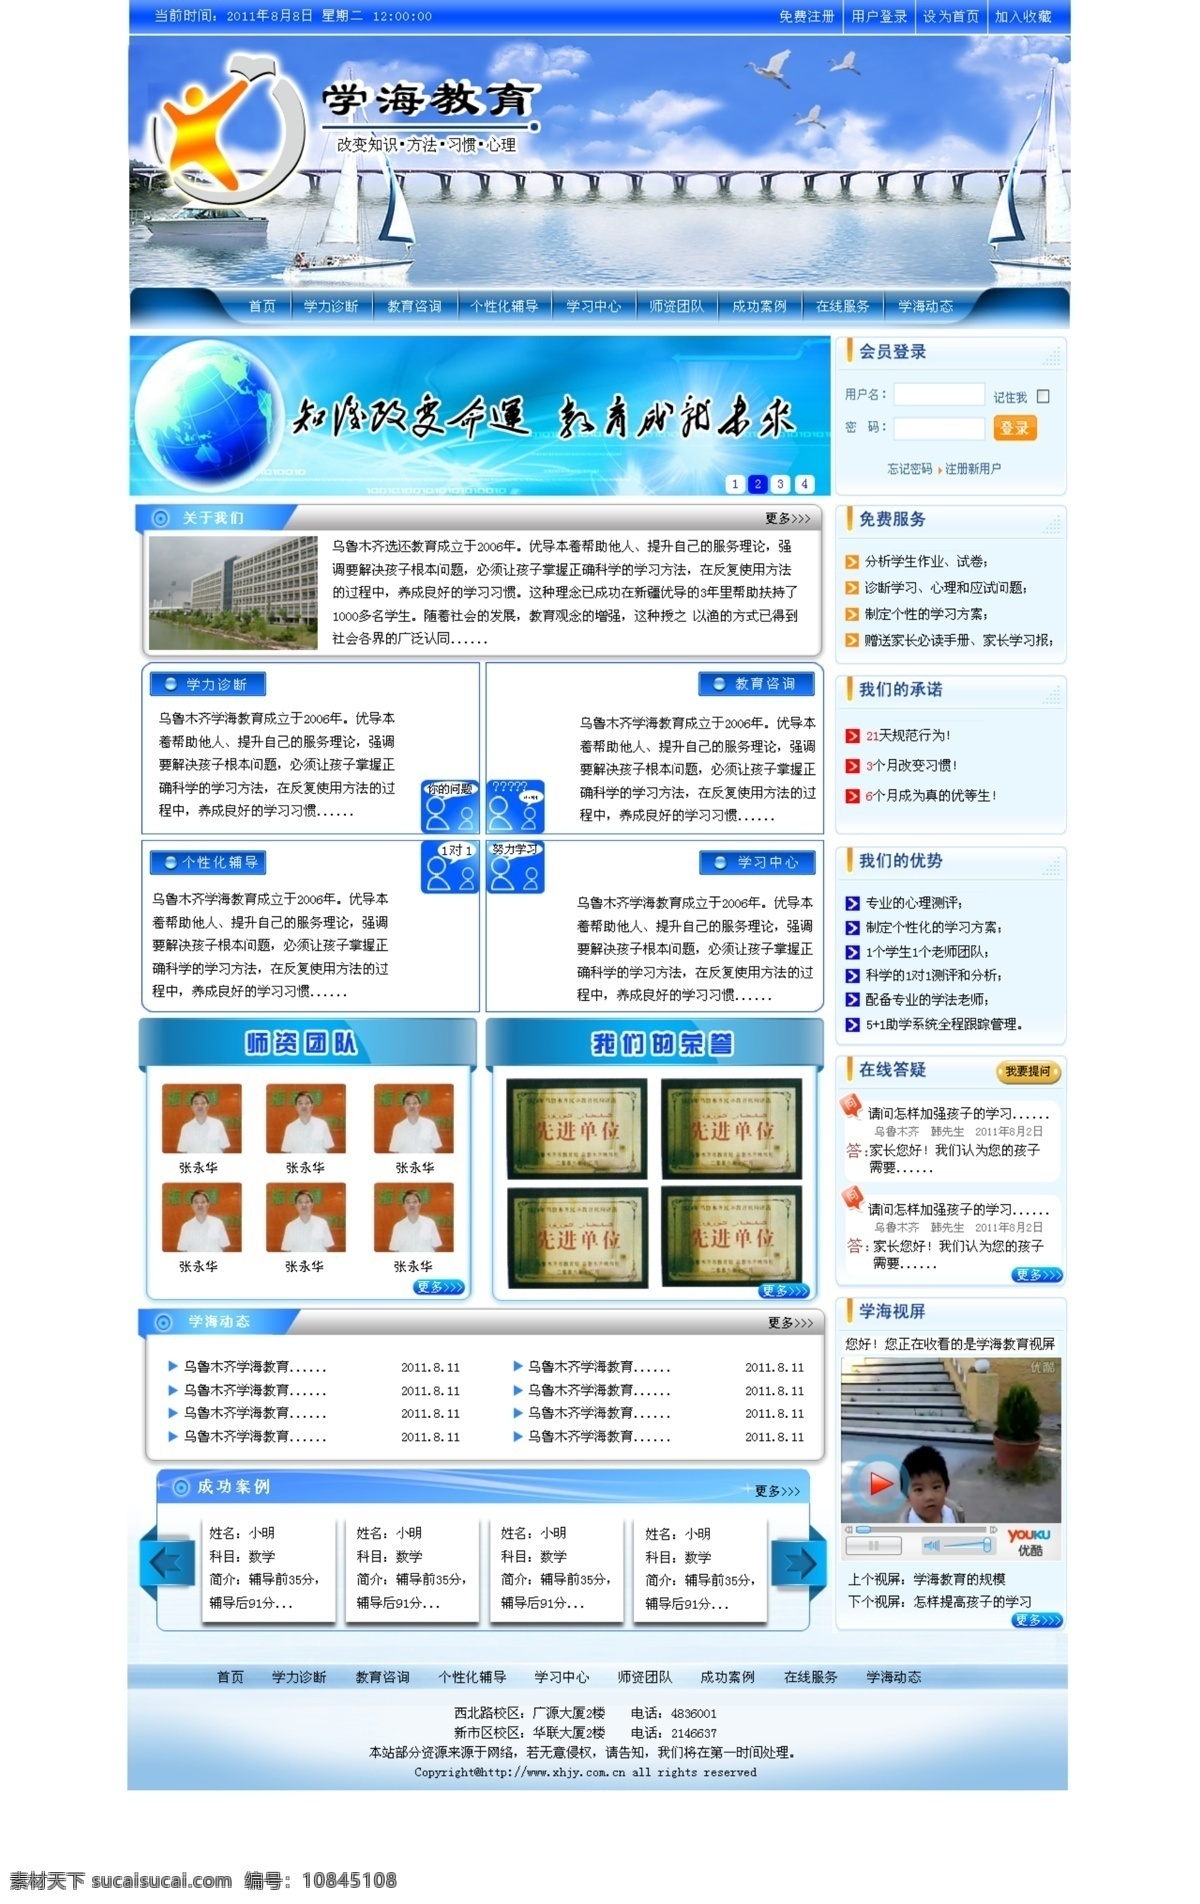 教育 网页 按钮 大海 地球 教育网页 蓝色 蓝天白云 网页模板 网页素材 知识 中文模版 源文件